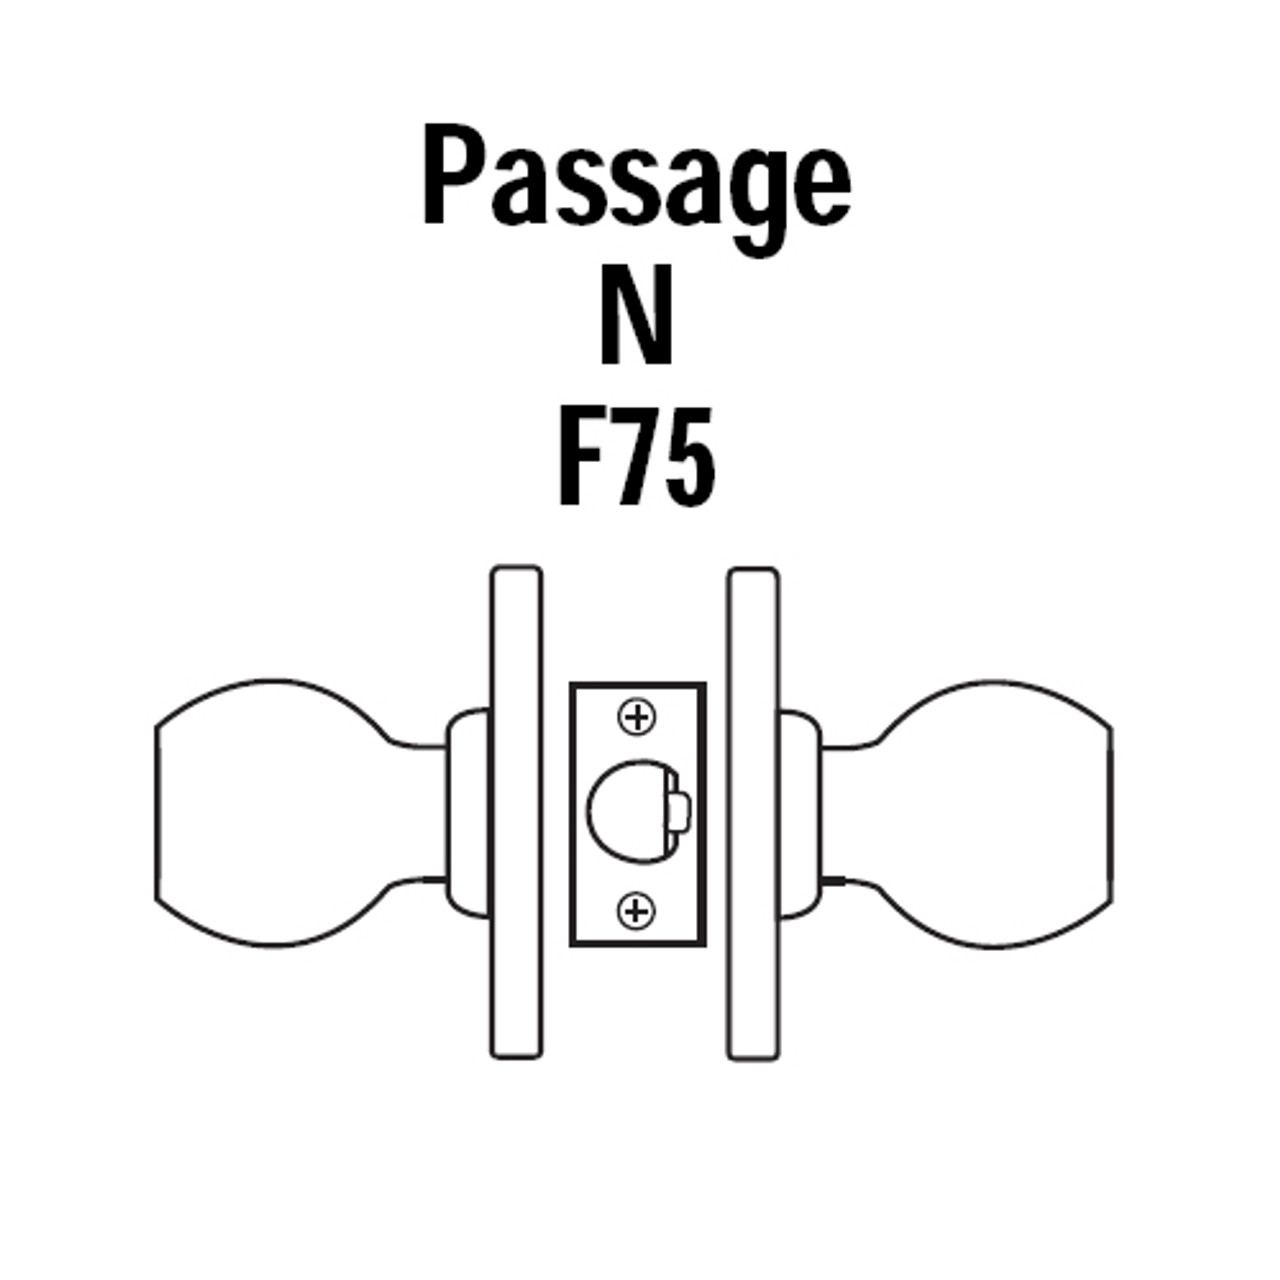 8K30N4DSTK606 Best 8K Series Passage Heavy Duty Cylindrical Knob Locks with Round Style in Satin Brass